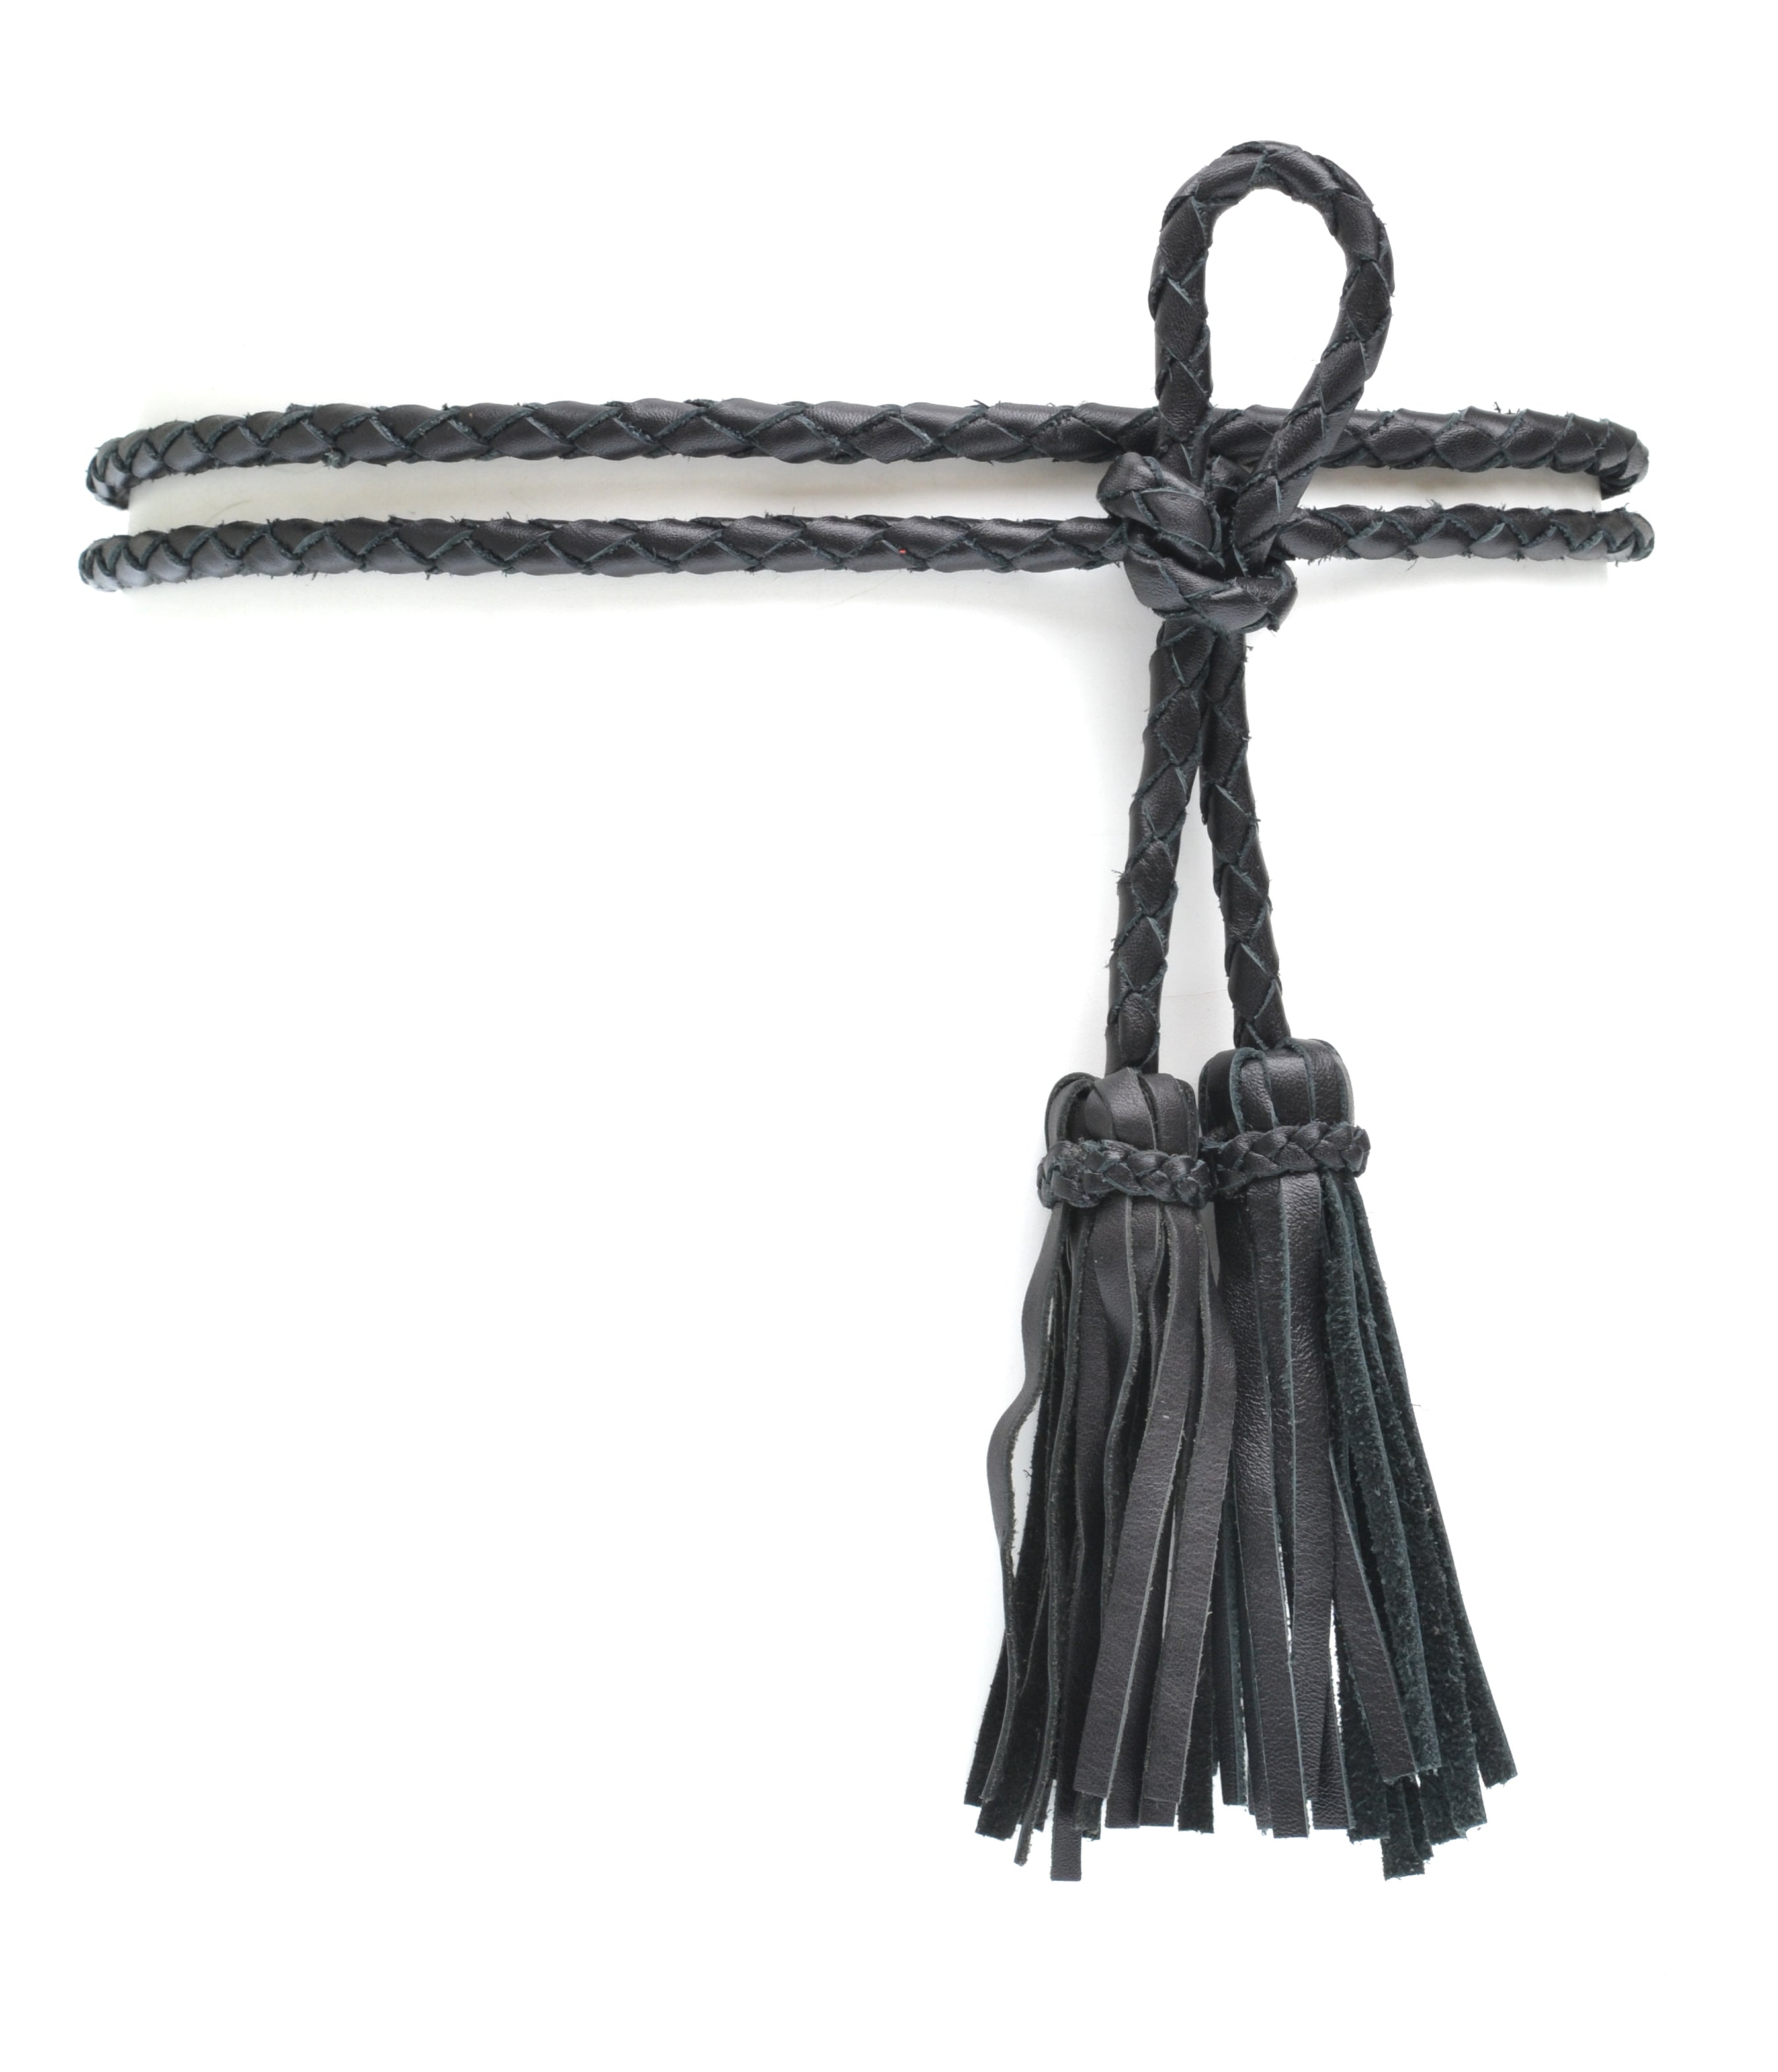 Skinny Tassel Belts, Rope Belt Women Tassel Braided Waist Belt